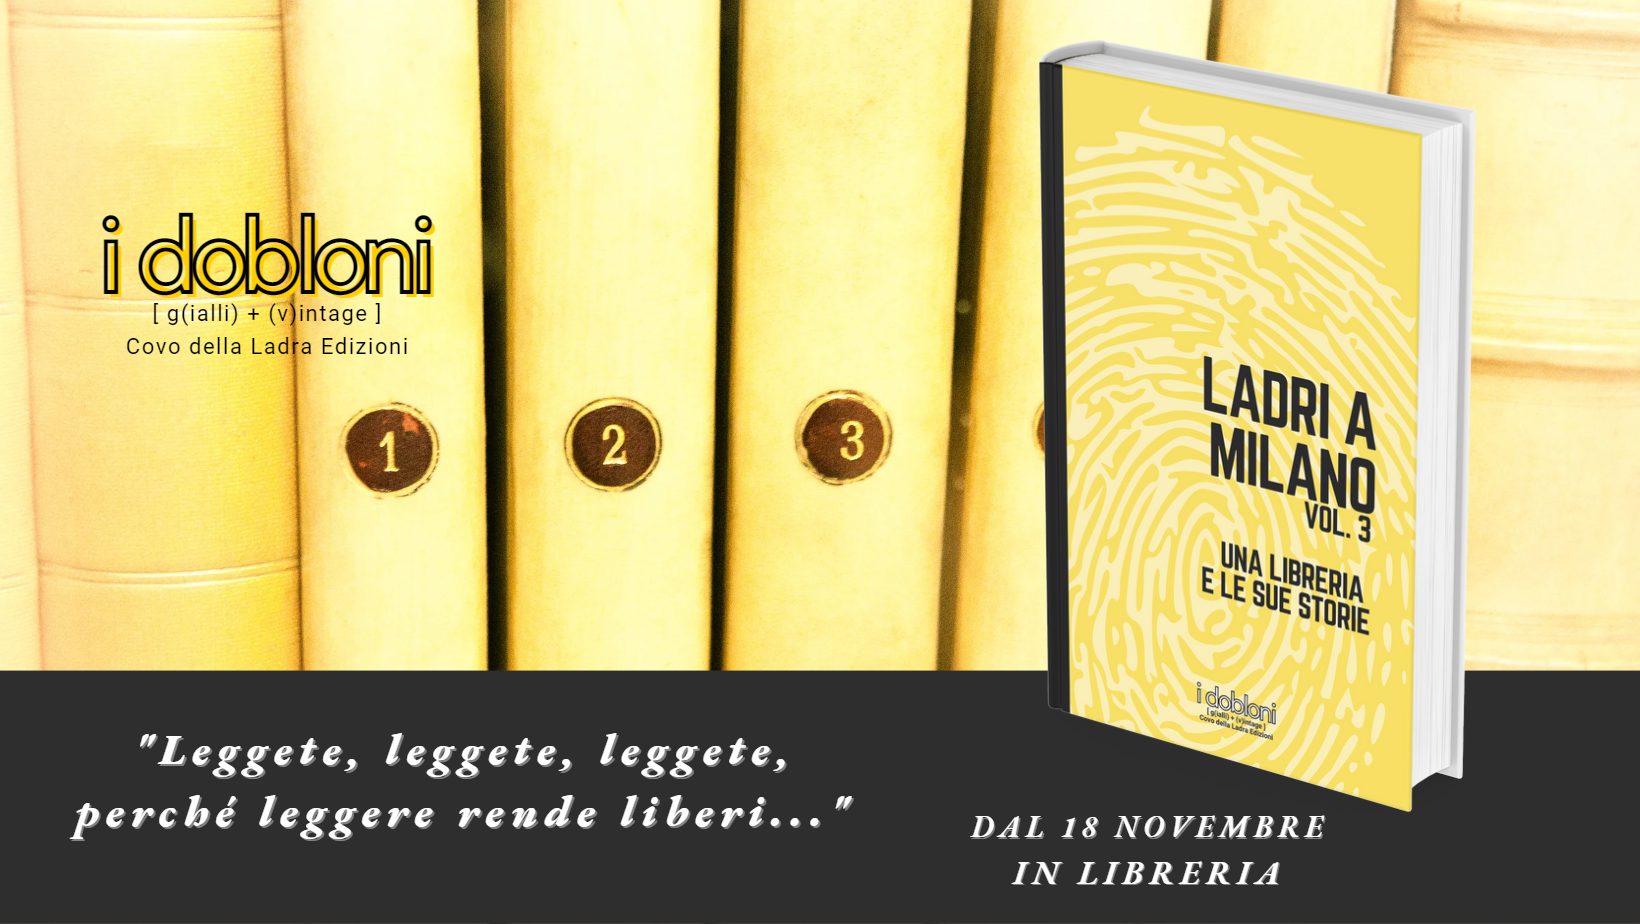 Un libro per fare del bene: esce Ladri a Milano Vol. 3